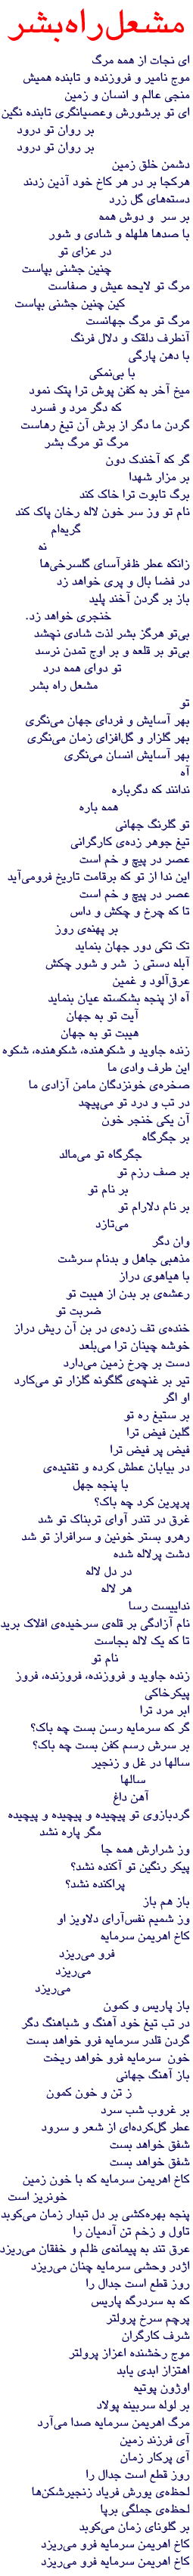 A poem by Afghan poet Paghar (in Farsi)